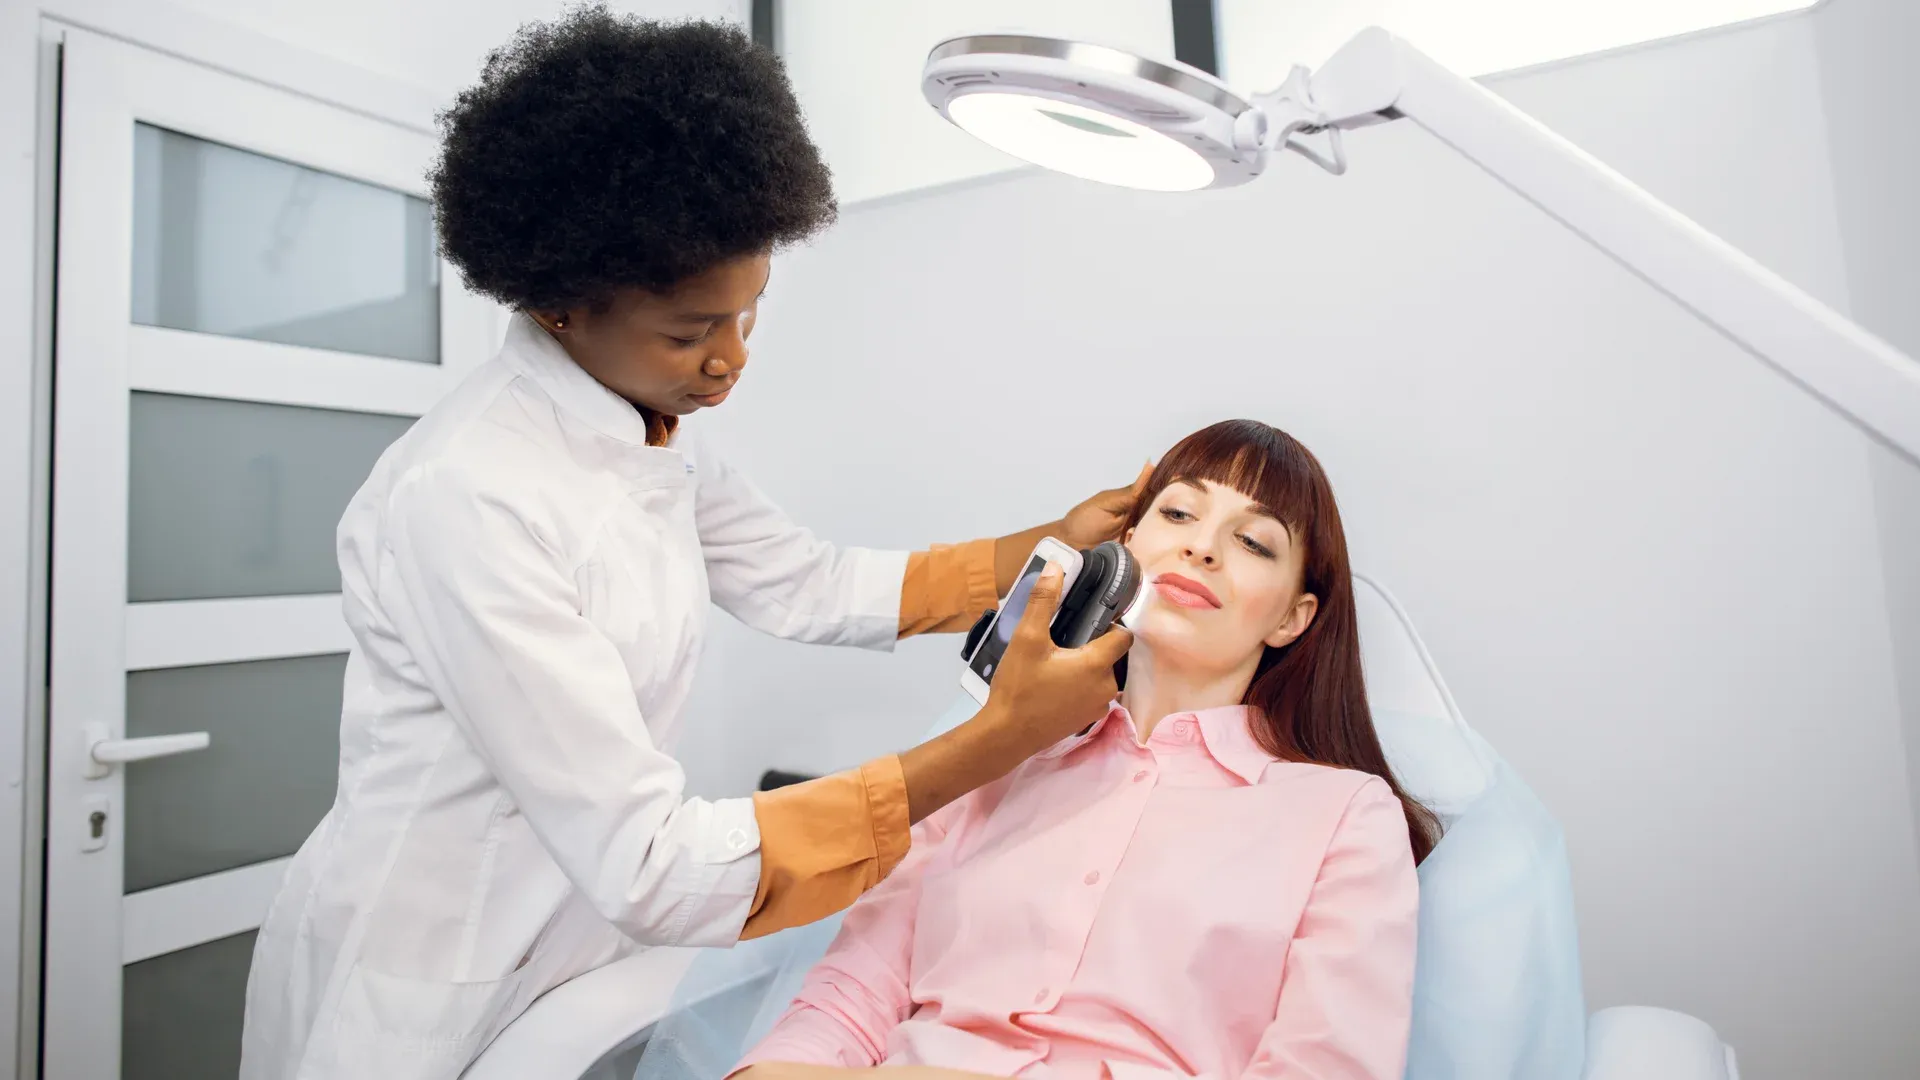 Dermatologista examina pele da paciente com um aparelho